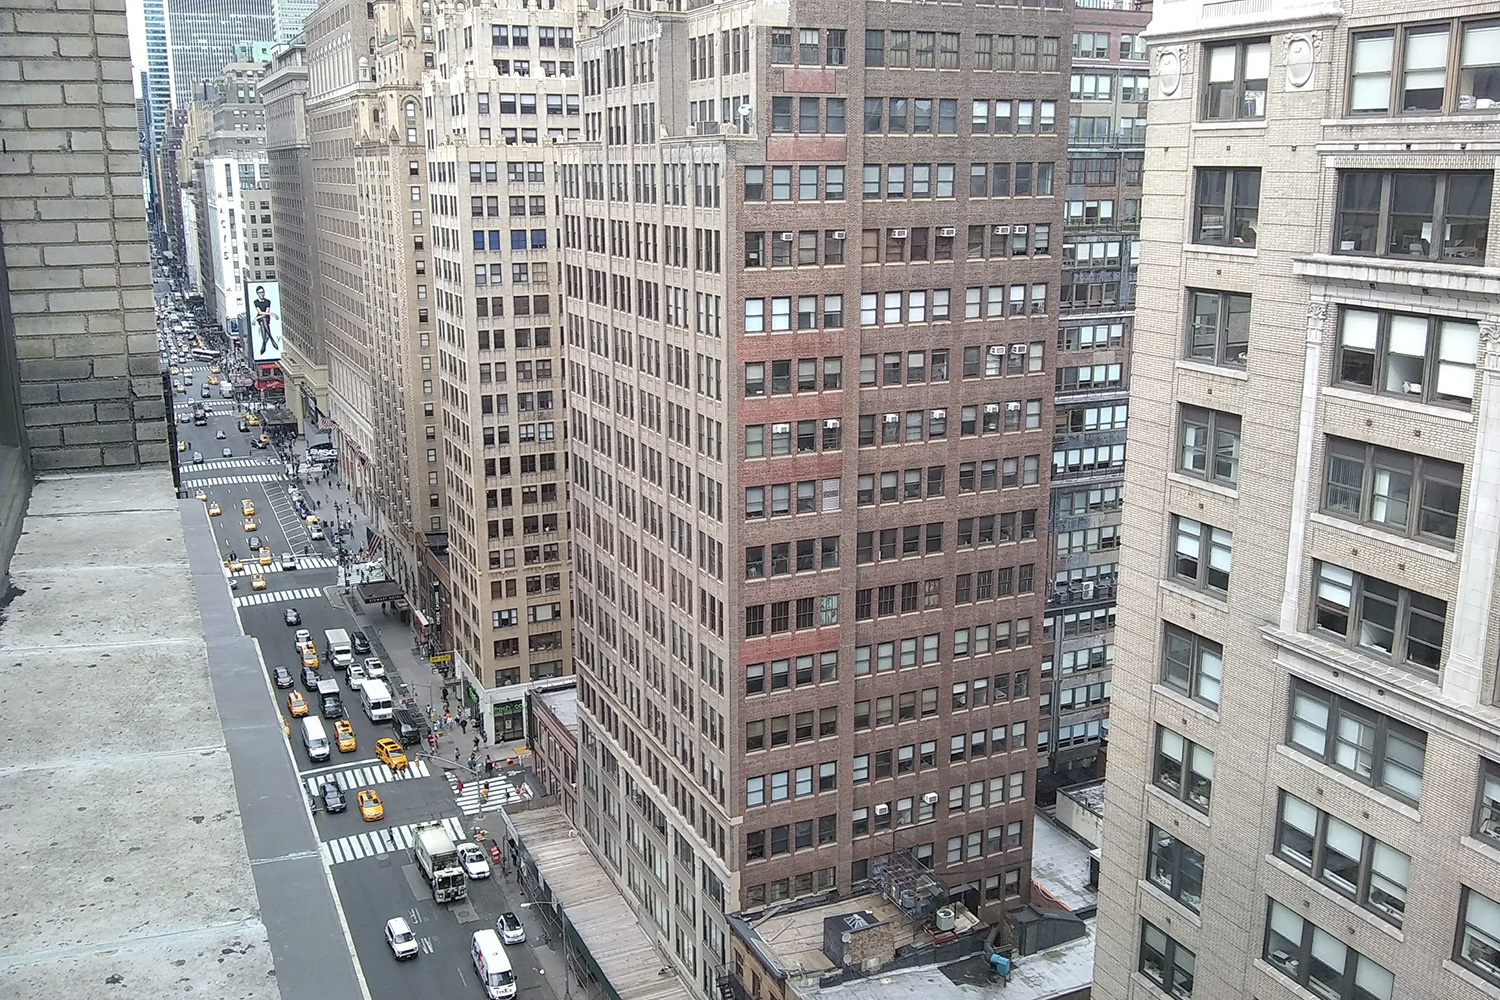 Moto E4 camera sample of New York City